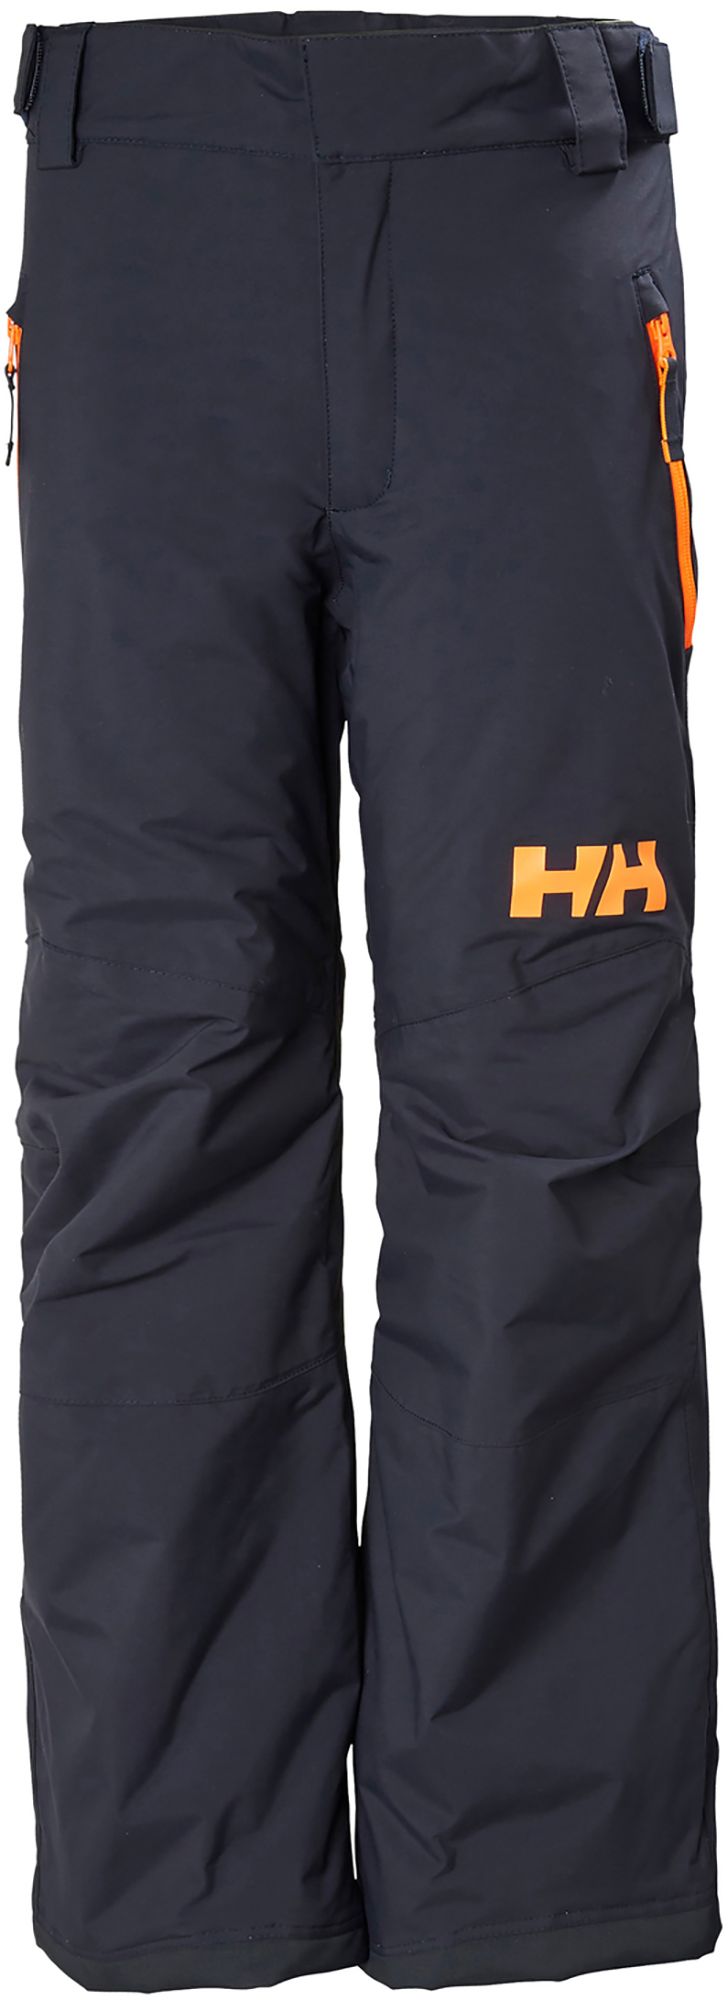 Photos - Ski Wear Helly Hansen Junior's Legendary Pants, Boys', Size 14, Navy 21HLYYYLGNDRYP 